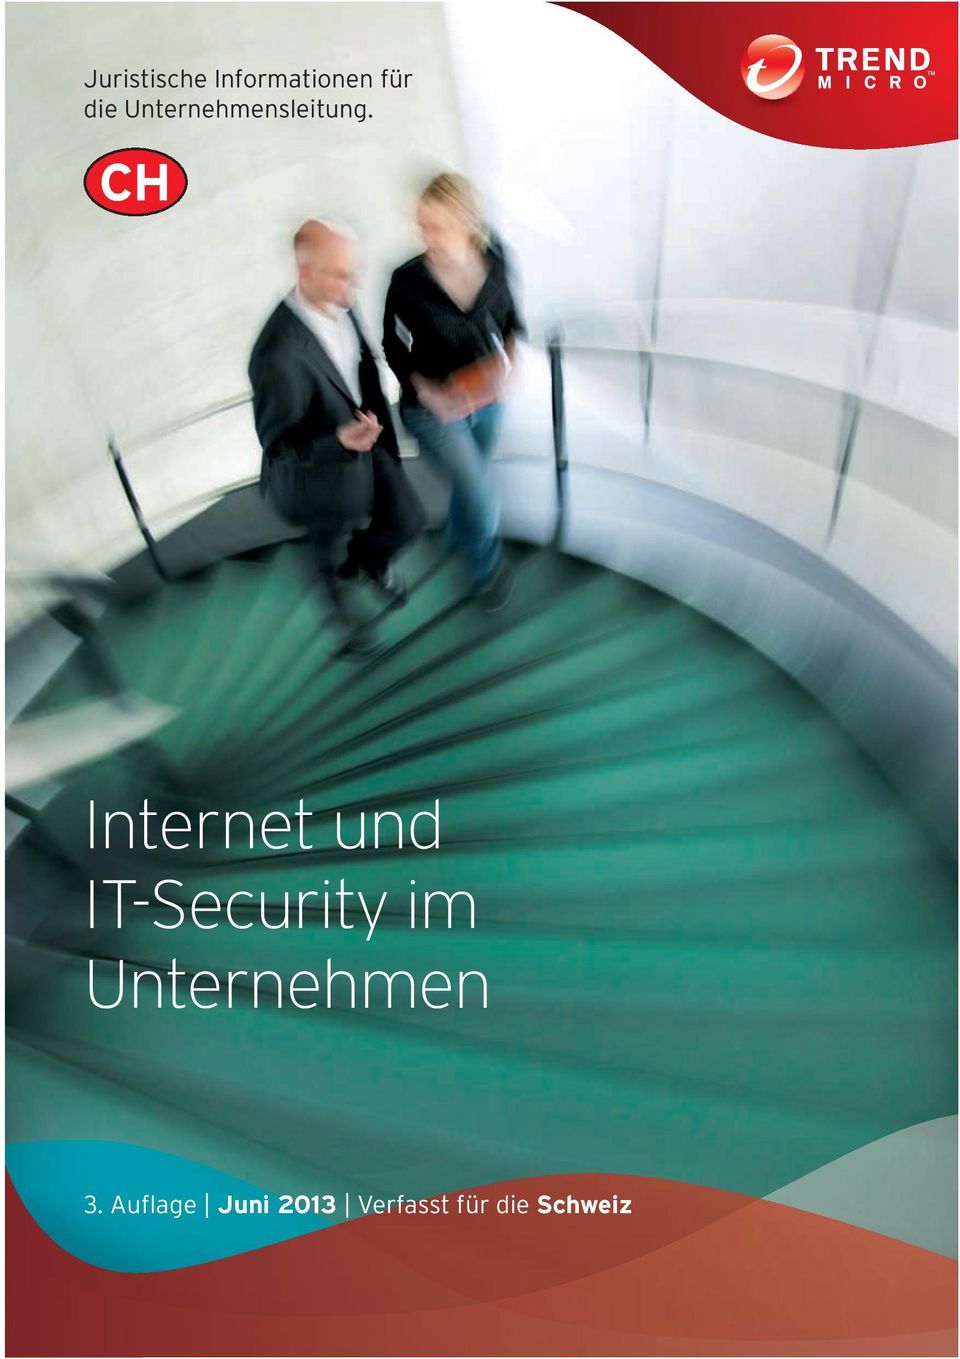 CH Internet und IT-Security im